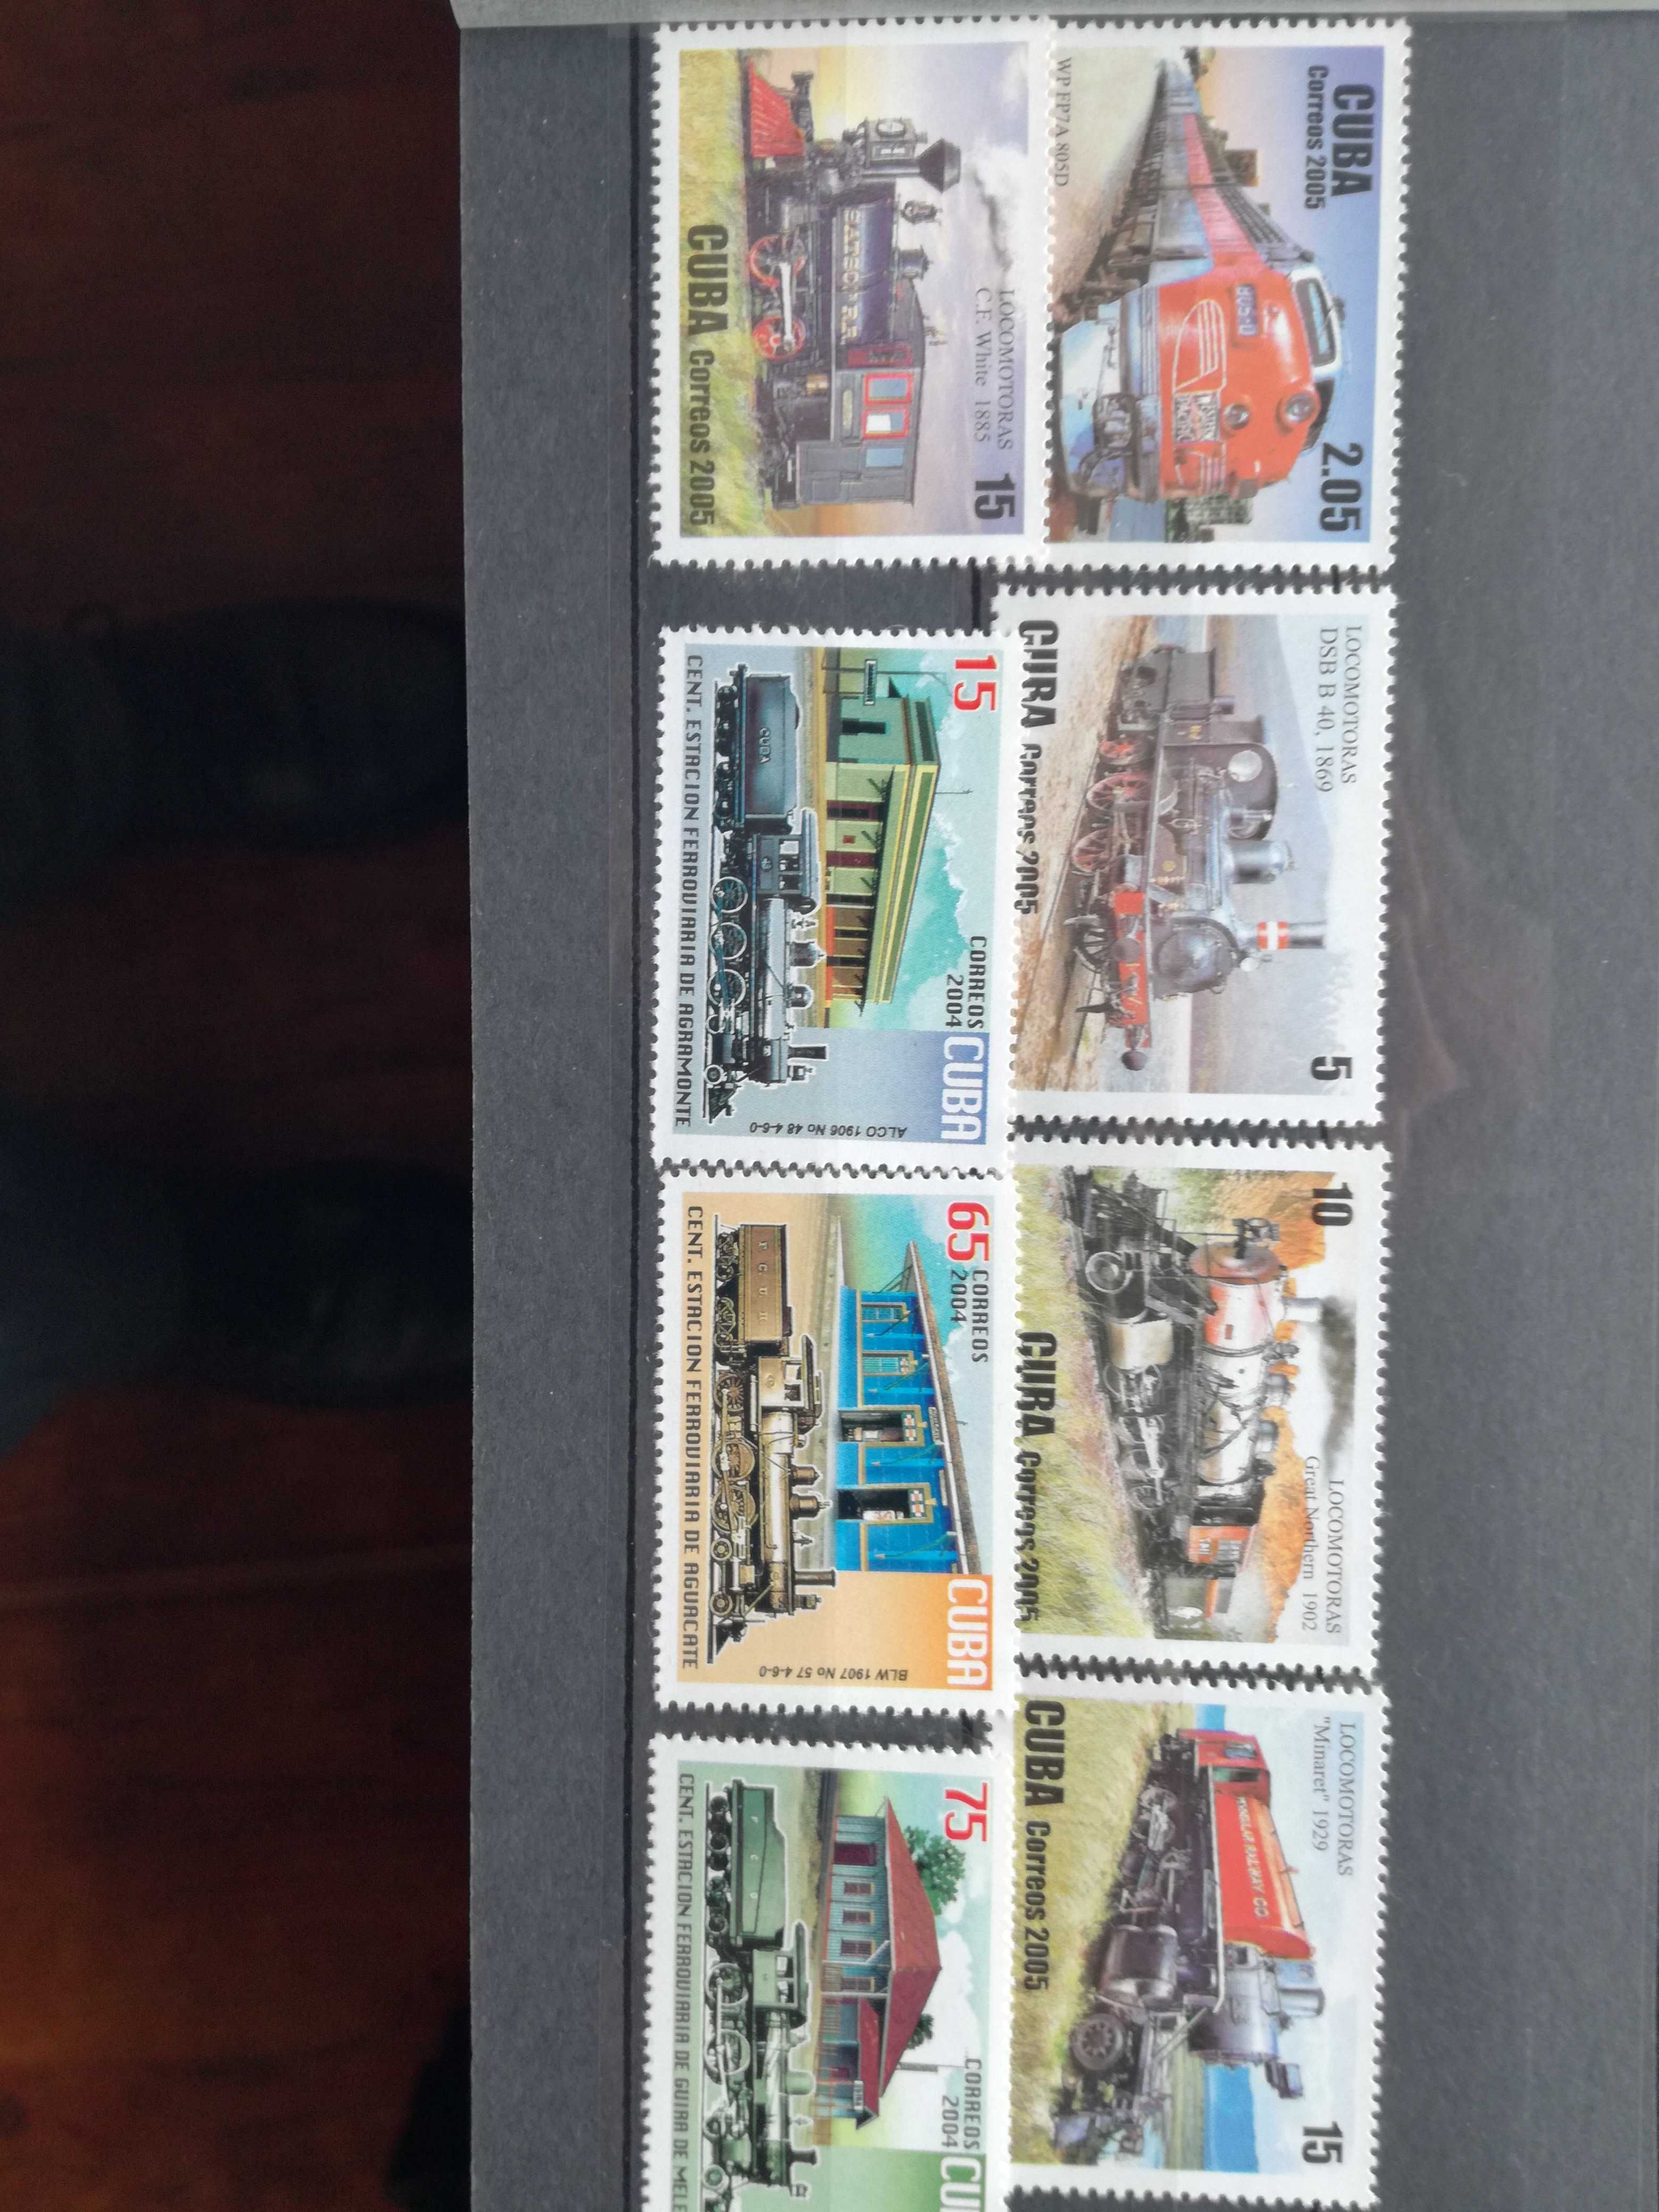 Vendo 2 series de selos de Cuba novos(Comboios)